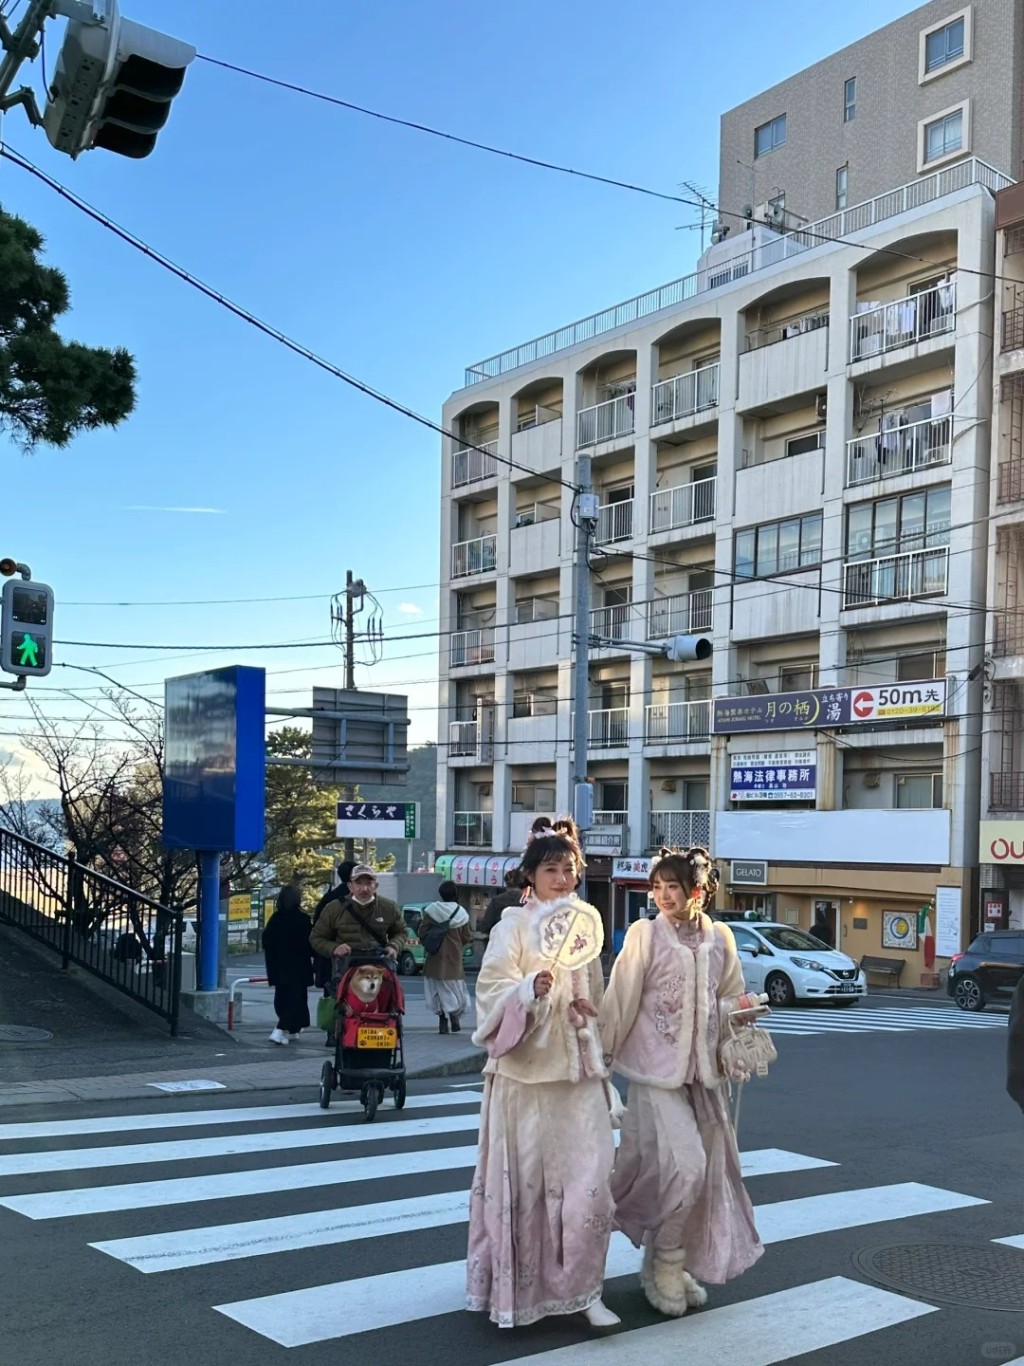 内地有网美在日本以汉服示人获不少当地人赞「卡哇伊」。小红书